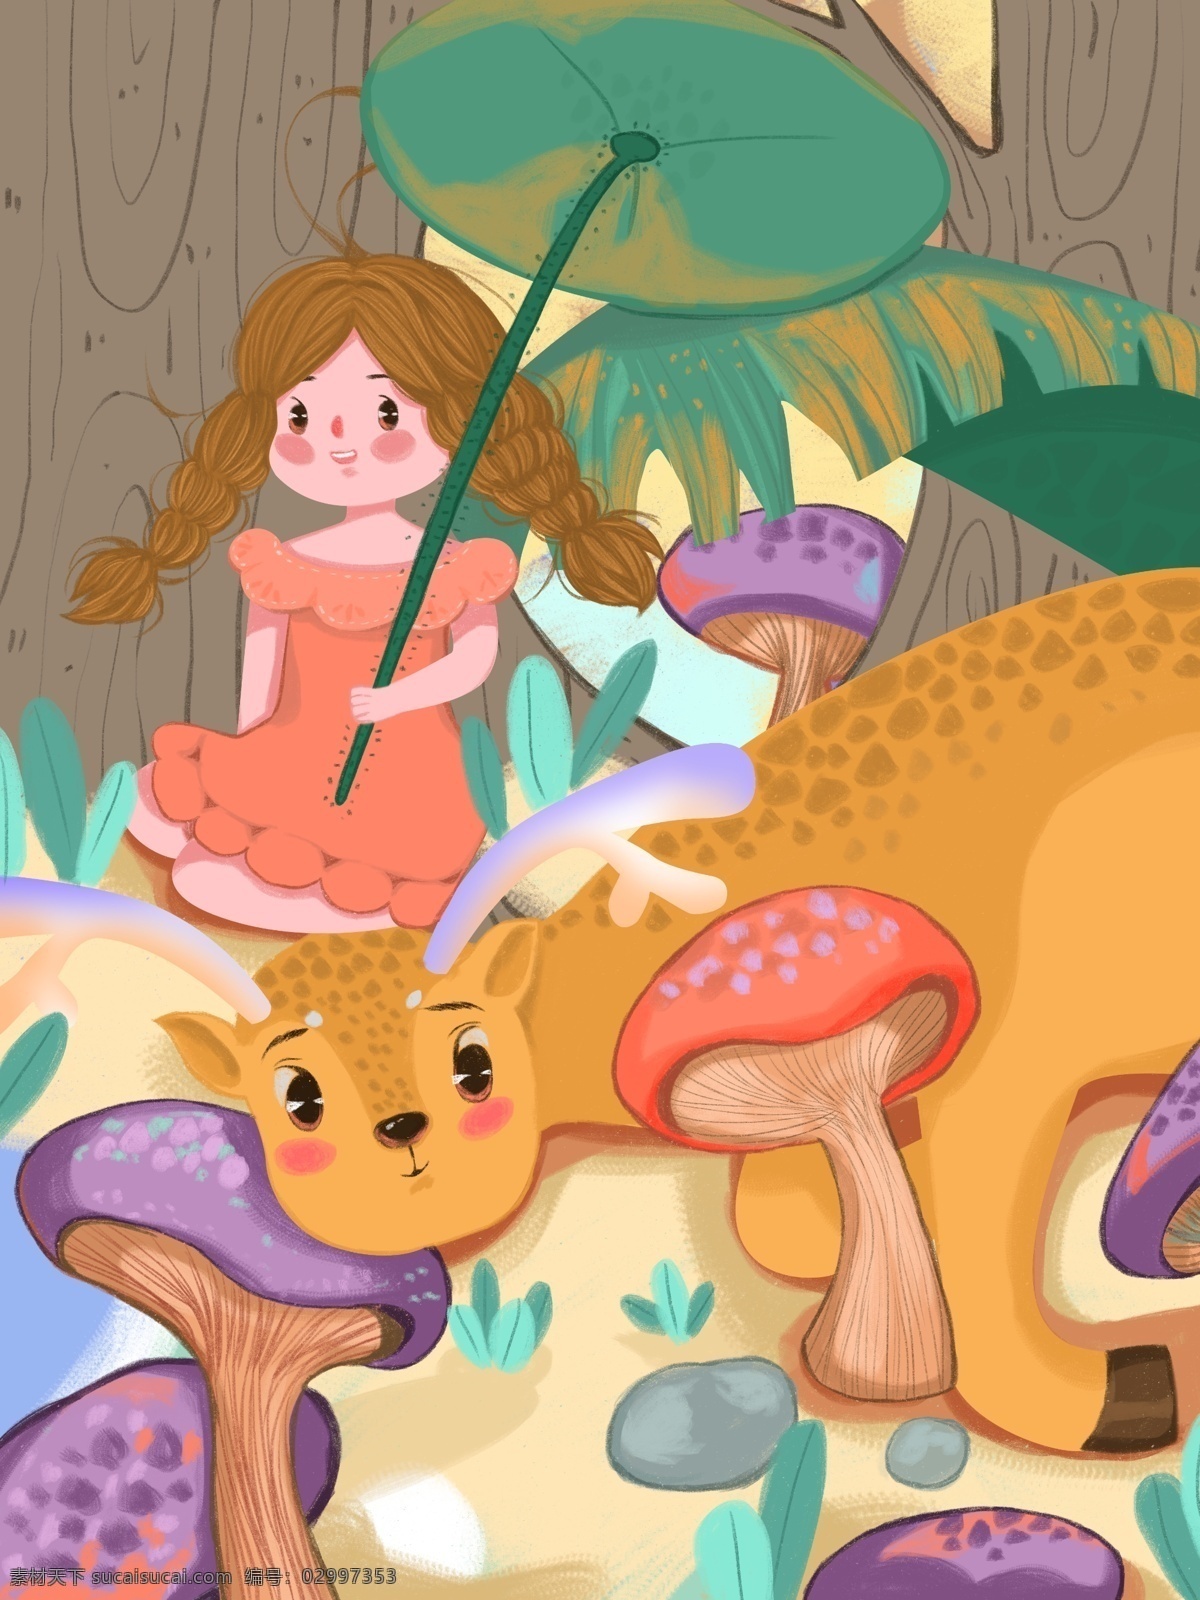 林 深 时见 鹿 治愈 女孩 荷叶 树 石头 蘑菇 插画 草 树木 可爱 林深时见鹿 童趣 连衣裙 鹿睡觉